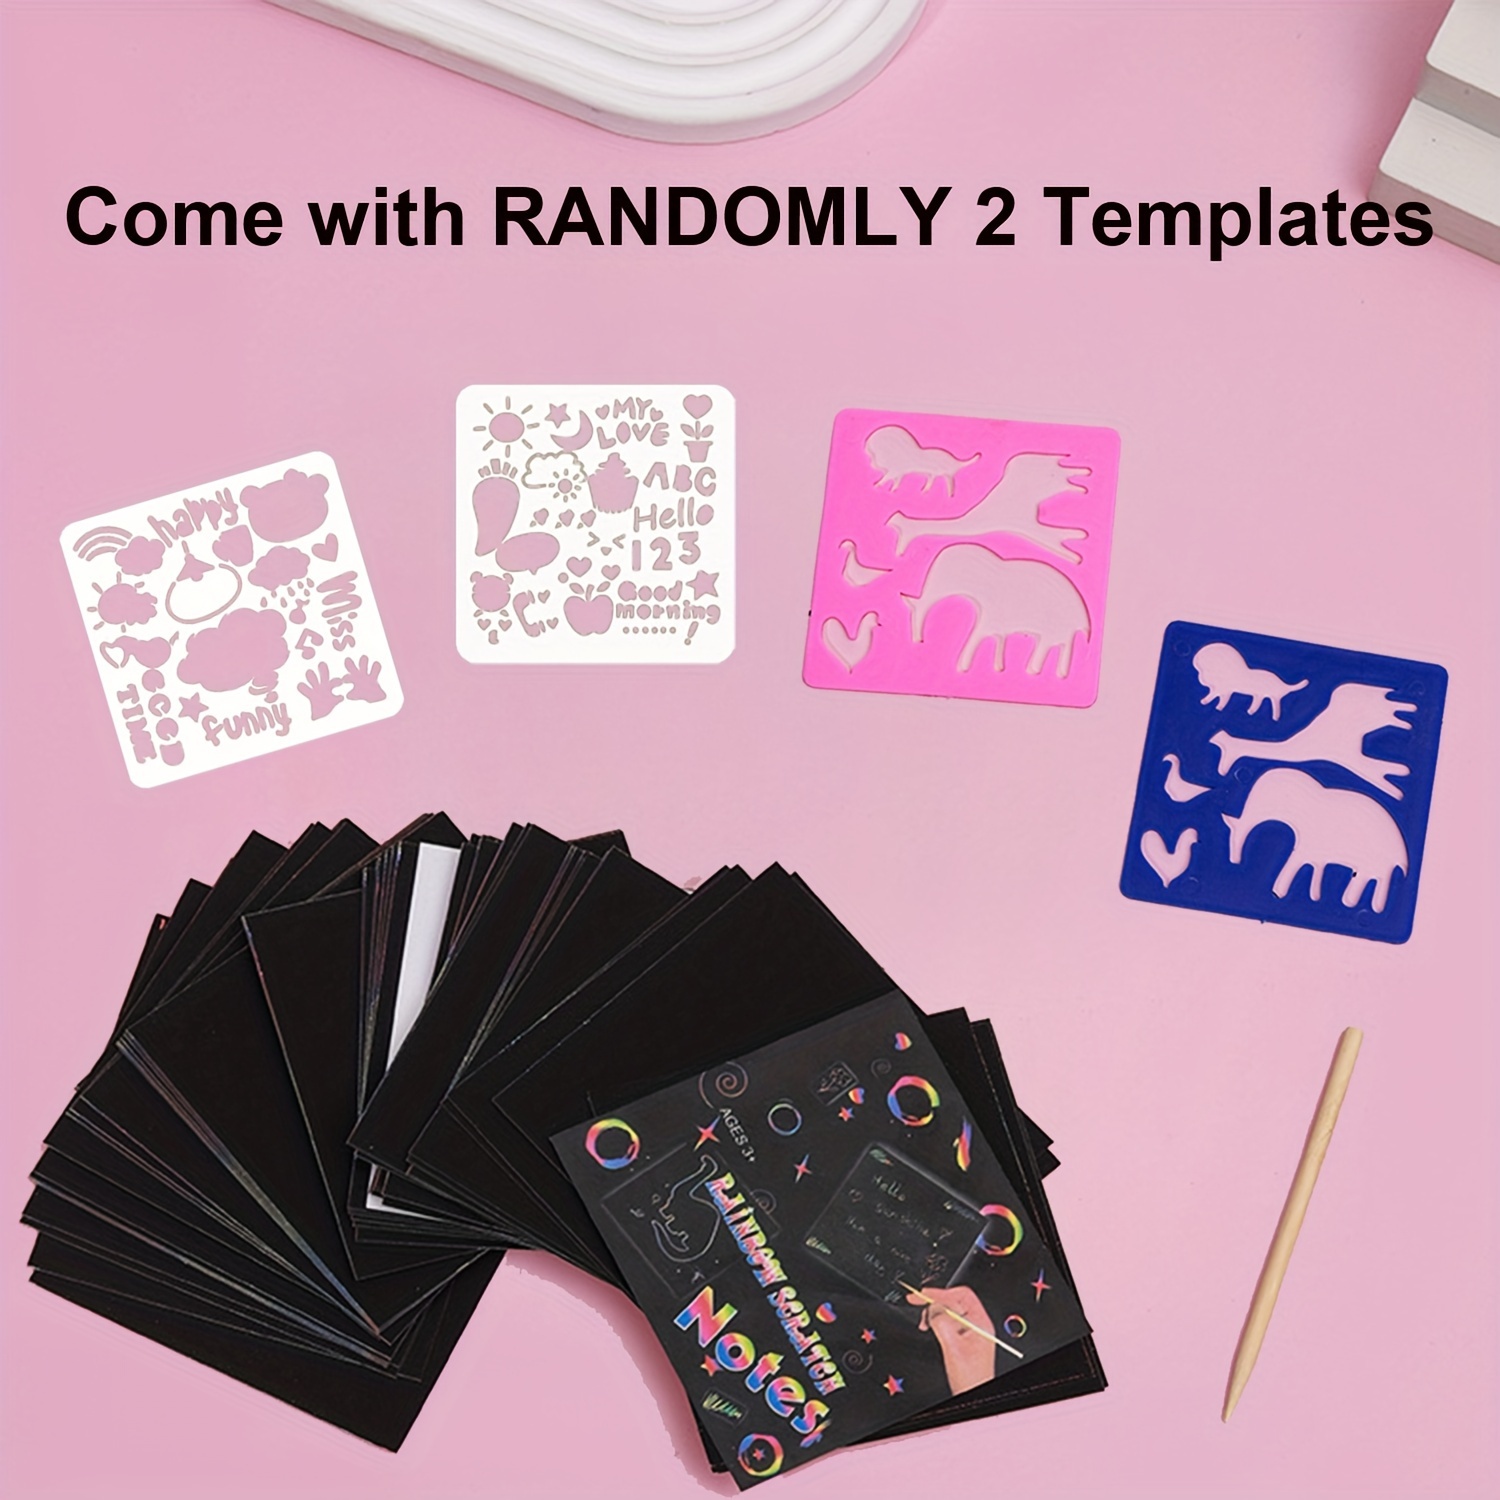 Rainbow Scratch Paper Sets: Magic Art Craft Scratch Off - Temu